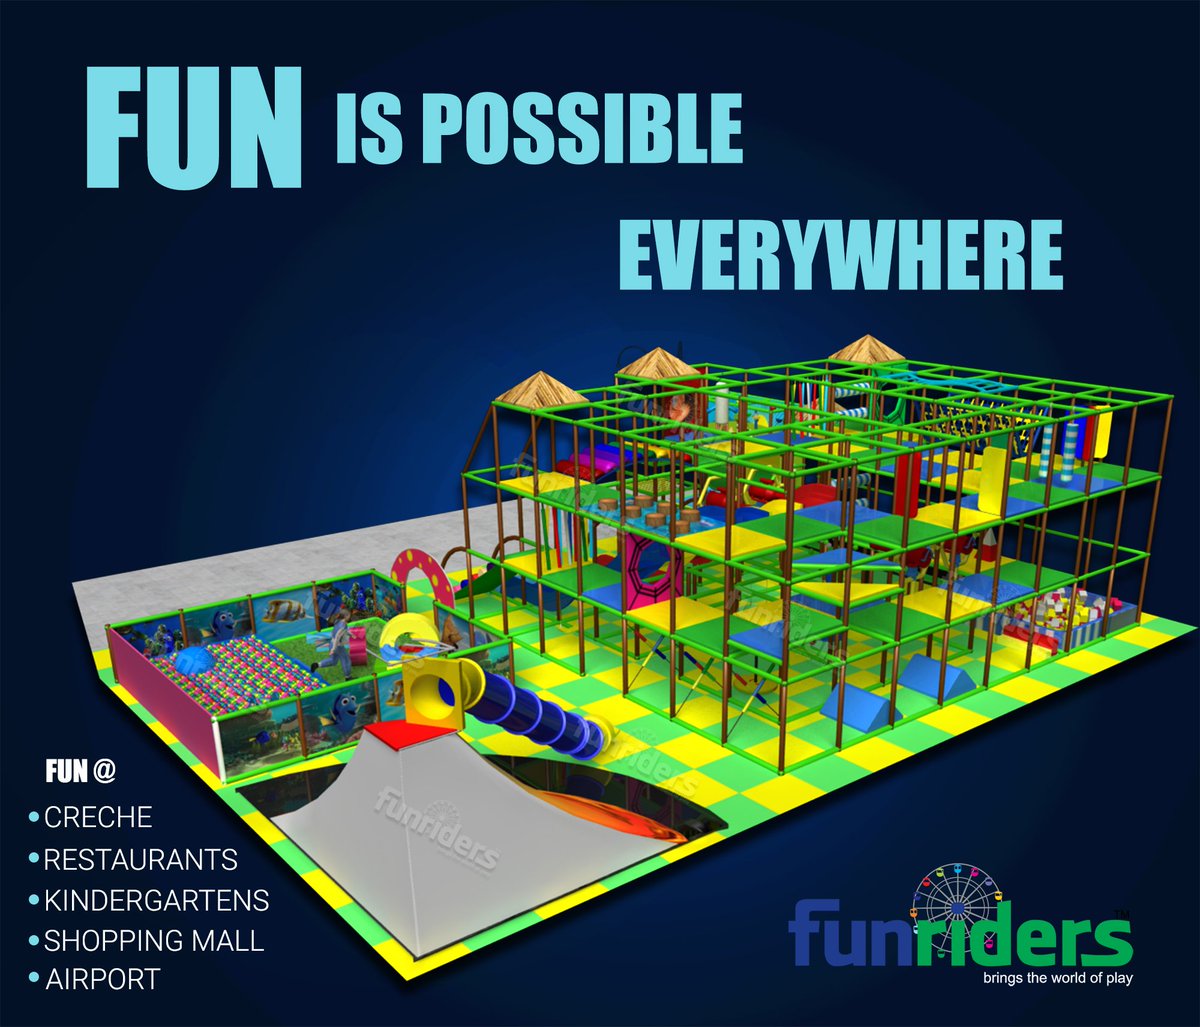 #fun #awsomeplay #creativedesigns #kiddiesworld #joyoftogetherness
funridersindia.com/outdoor-play-e…
softplayinternational.com/indoor-playgro…